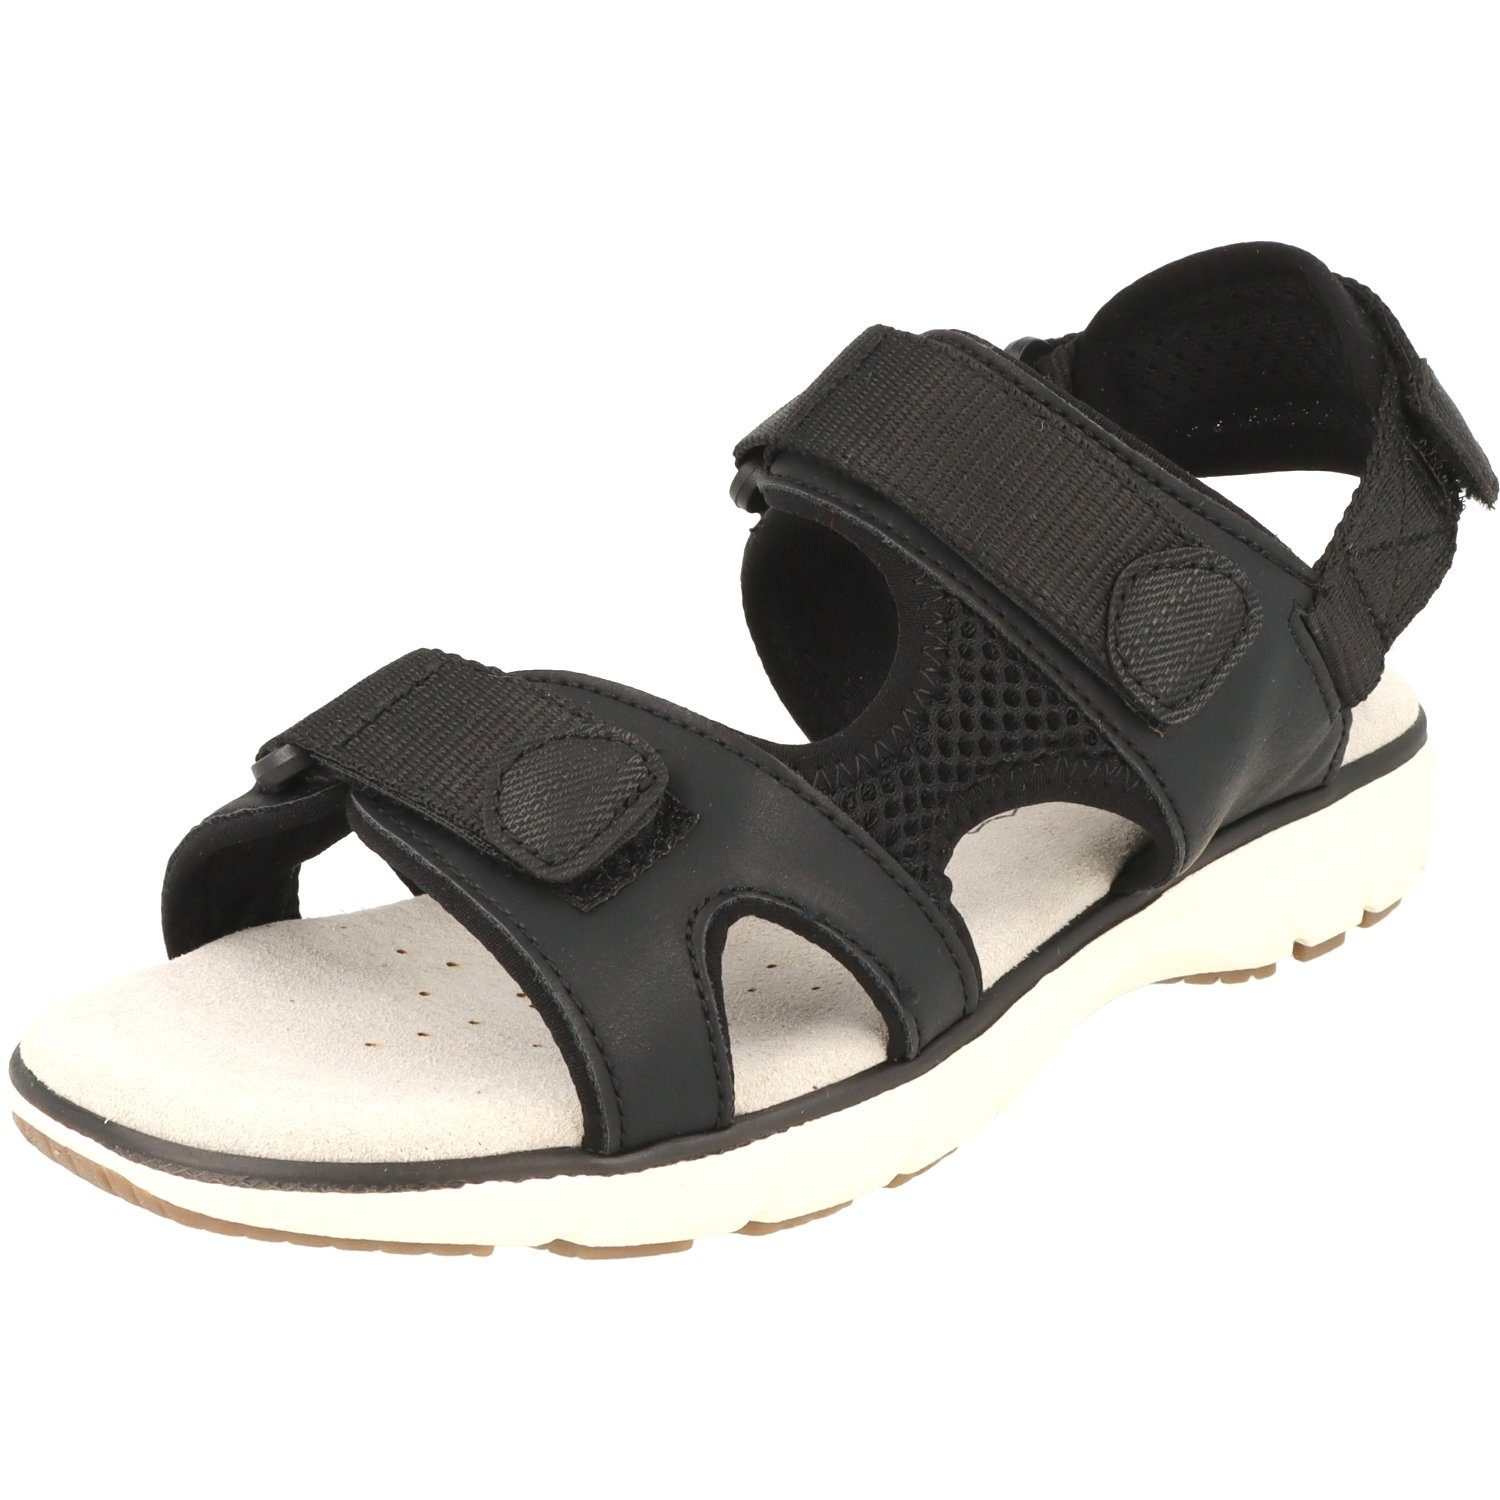 OTTO Damen Schuhe Sandalen Sandalen mit Klettverschluss »Damen Schuhe Freizeit Sommer Sandalen 281-451 mit Klettverschluss« Outdoorsandale 